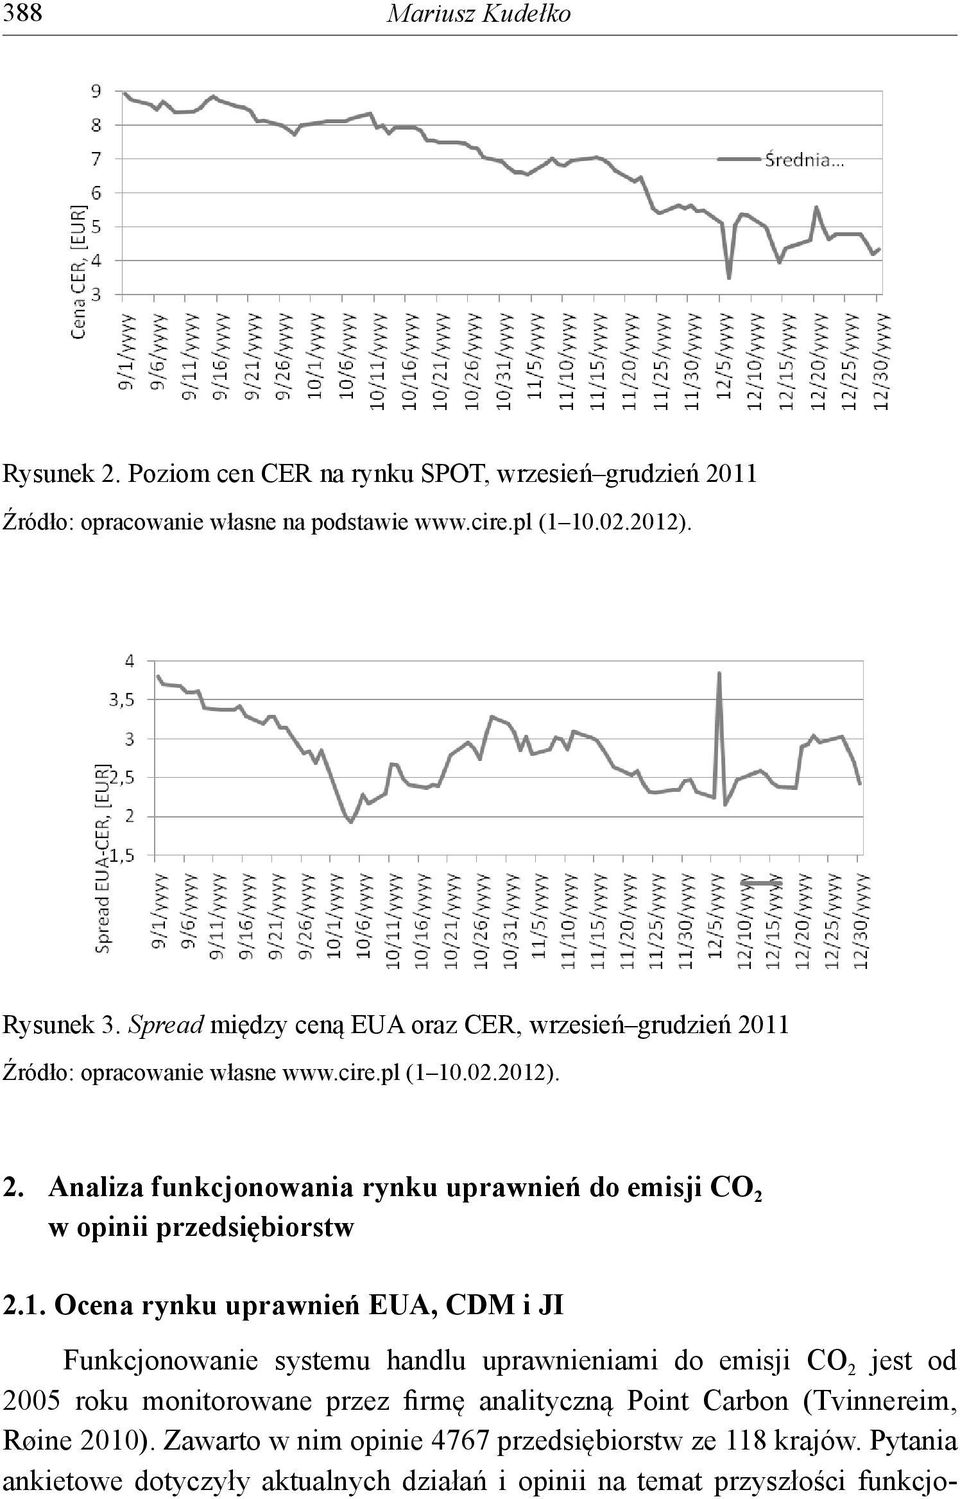 1. Ocena rynku uprawnień EUA, CDM i JI Funkcjonowanie systemu handlu uprawnieniami do emisji CO 2 jest od 2005 roku monitorowane przez firmę analityczną Point Carbon